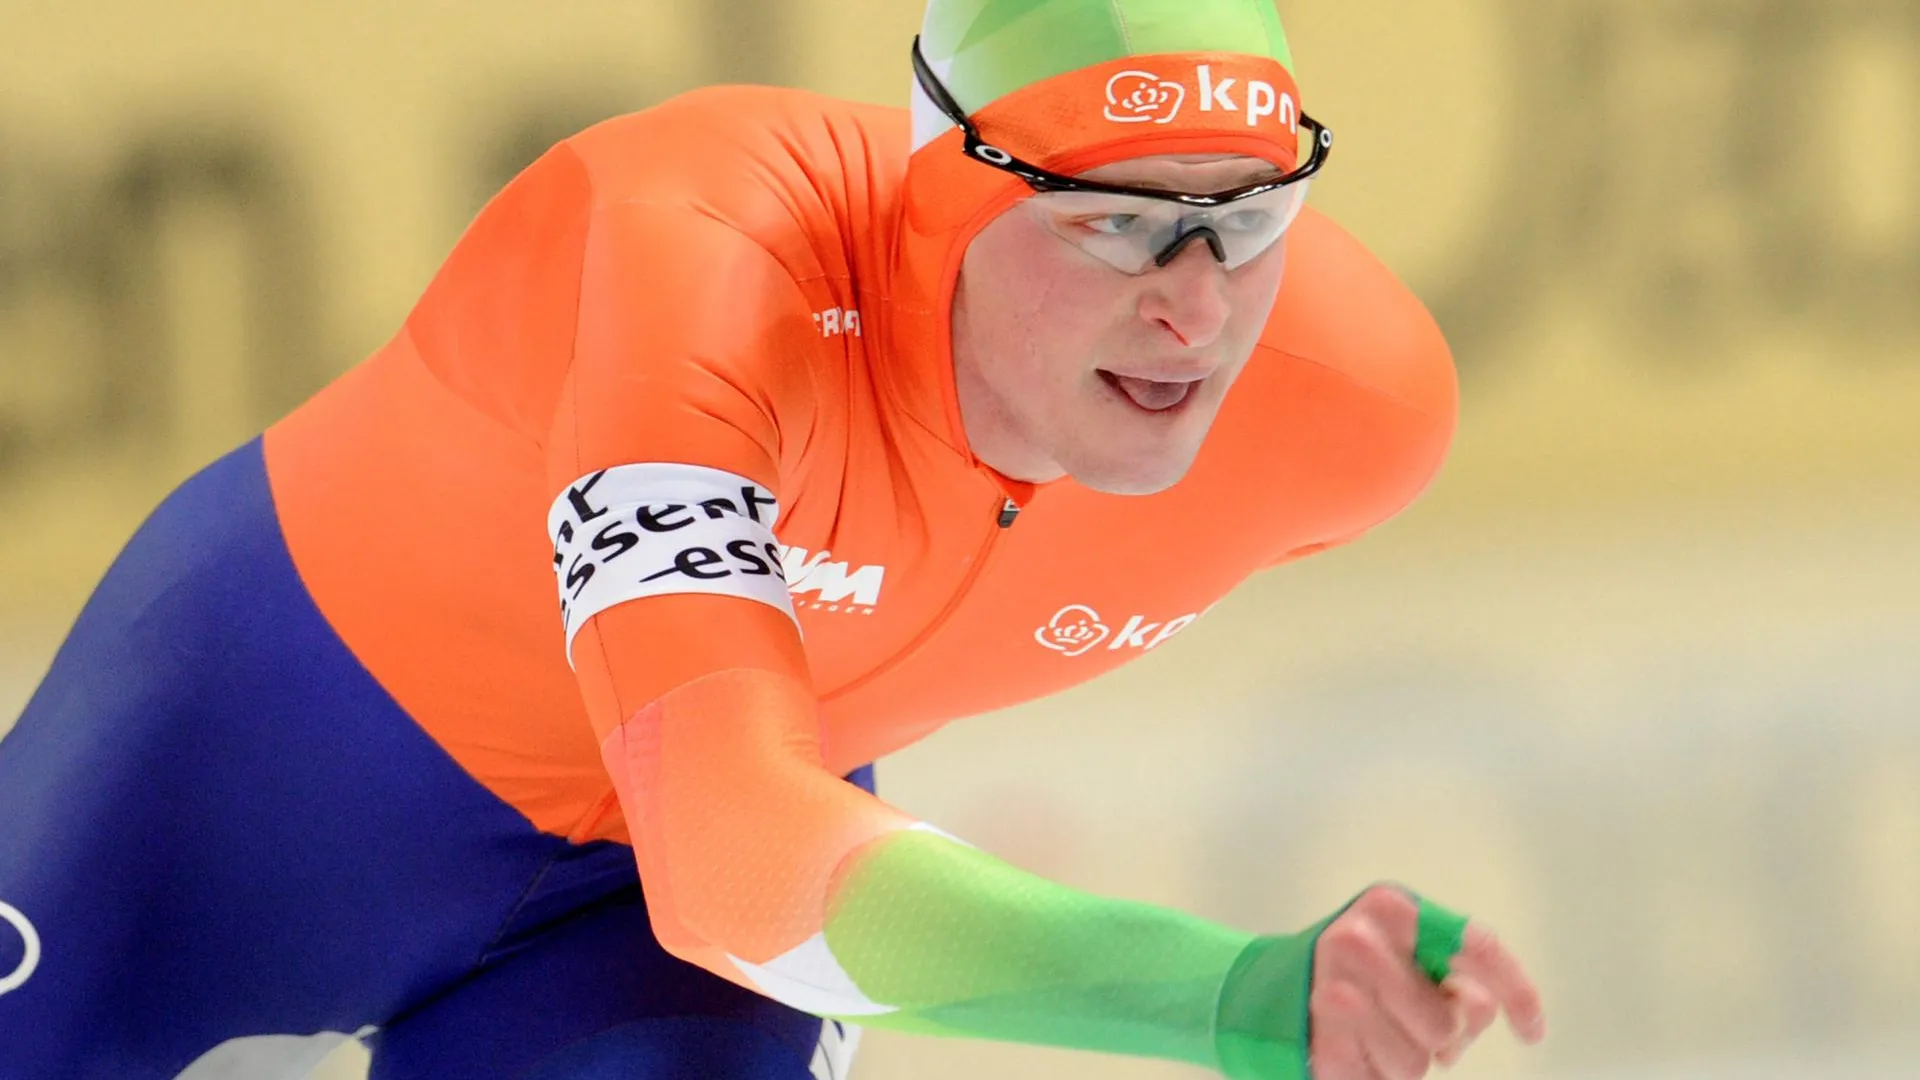 Конькобежец Крамер выиграл дистанцию 5000 м на этапе КМ в Коломне